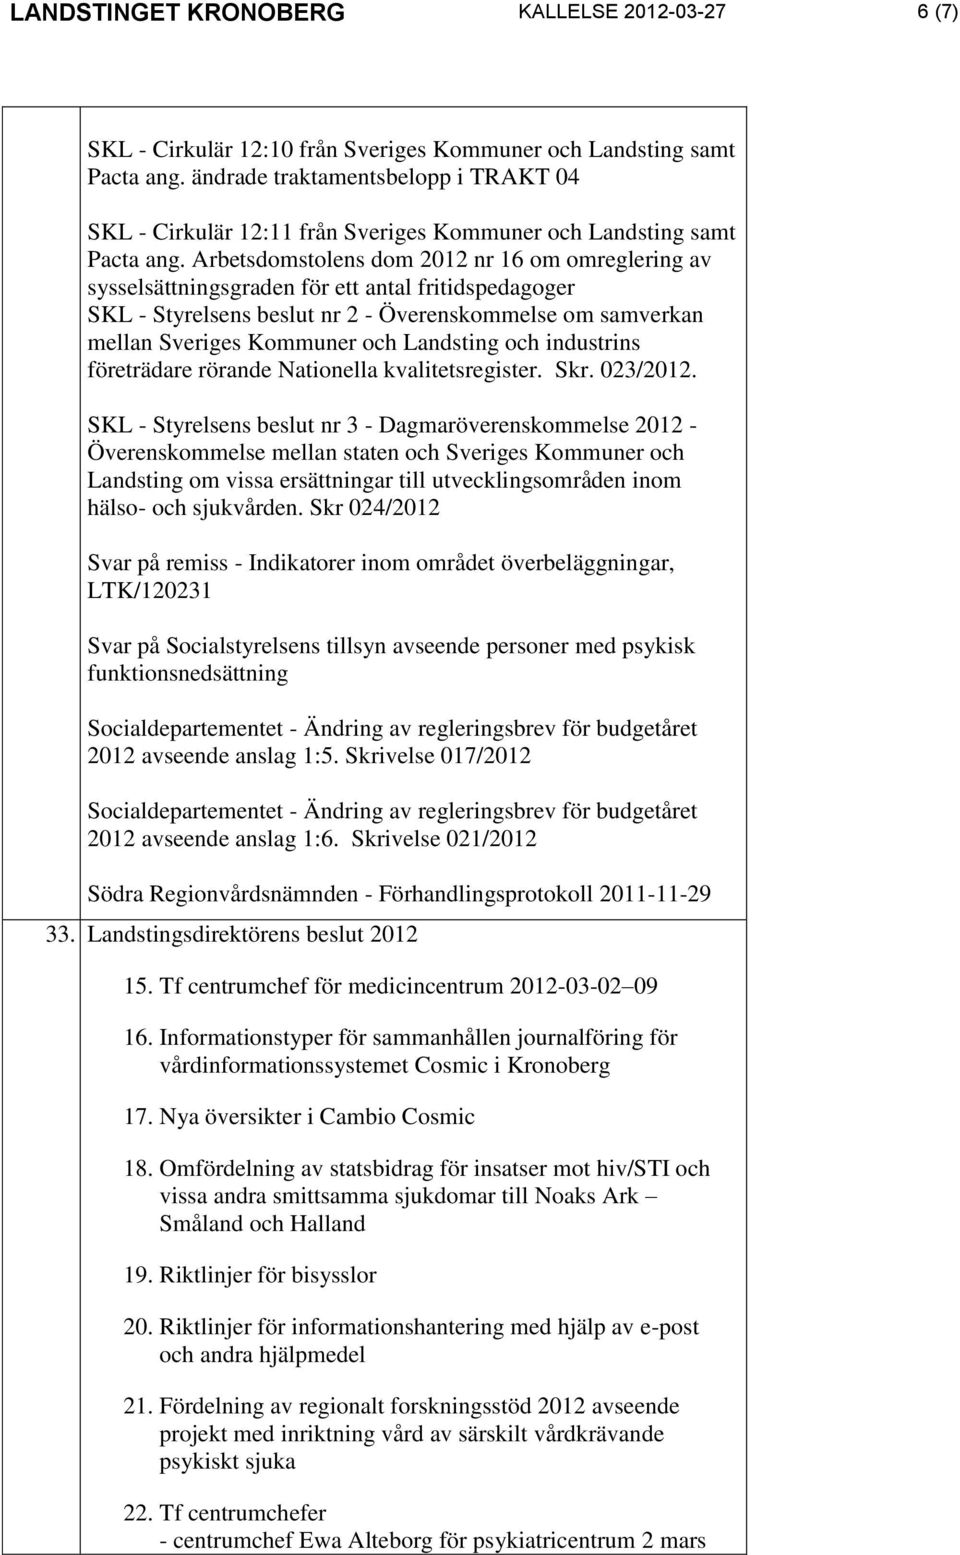 Arbetsdomstolens dom 2012 nr 16 om omreglering av sysselsättningsgraden för ett antal fritidspedagoger SKL - Styrelsens beslut nr 2 - Överenskommelse om samverkan mellan Sveriges Kommuner och